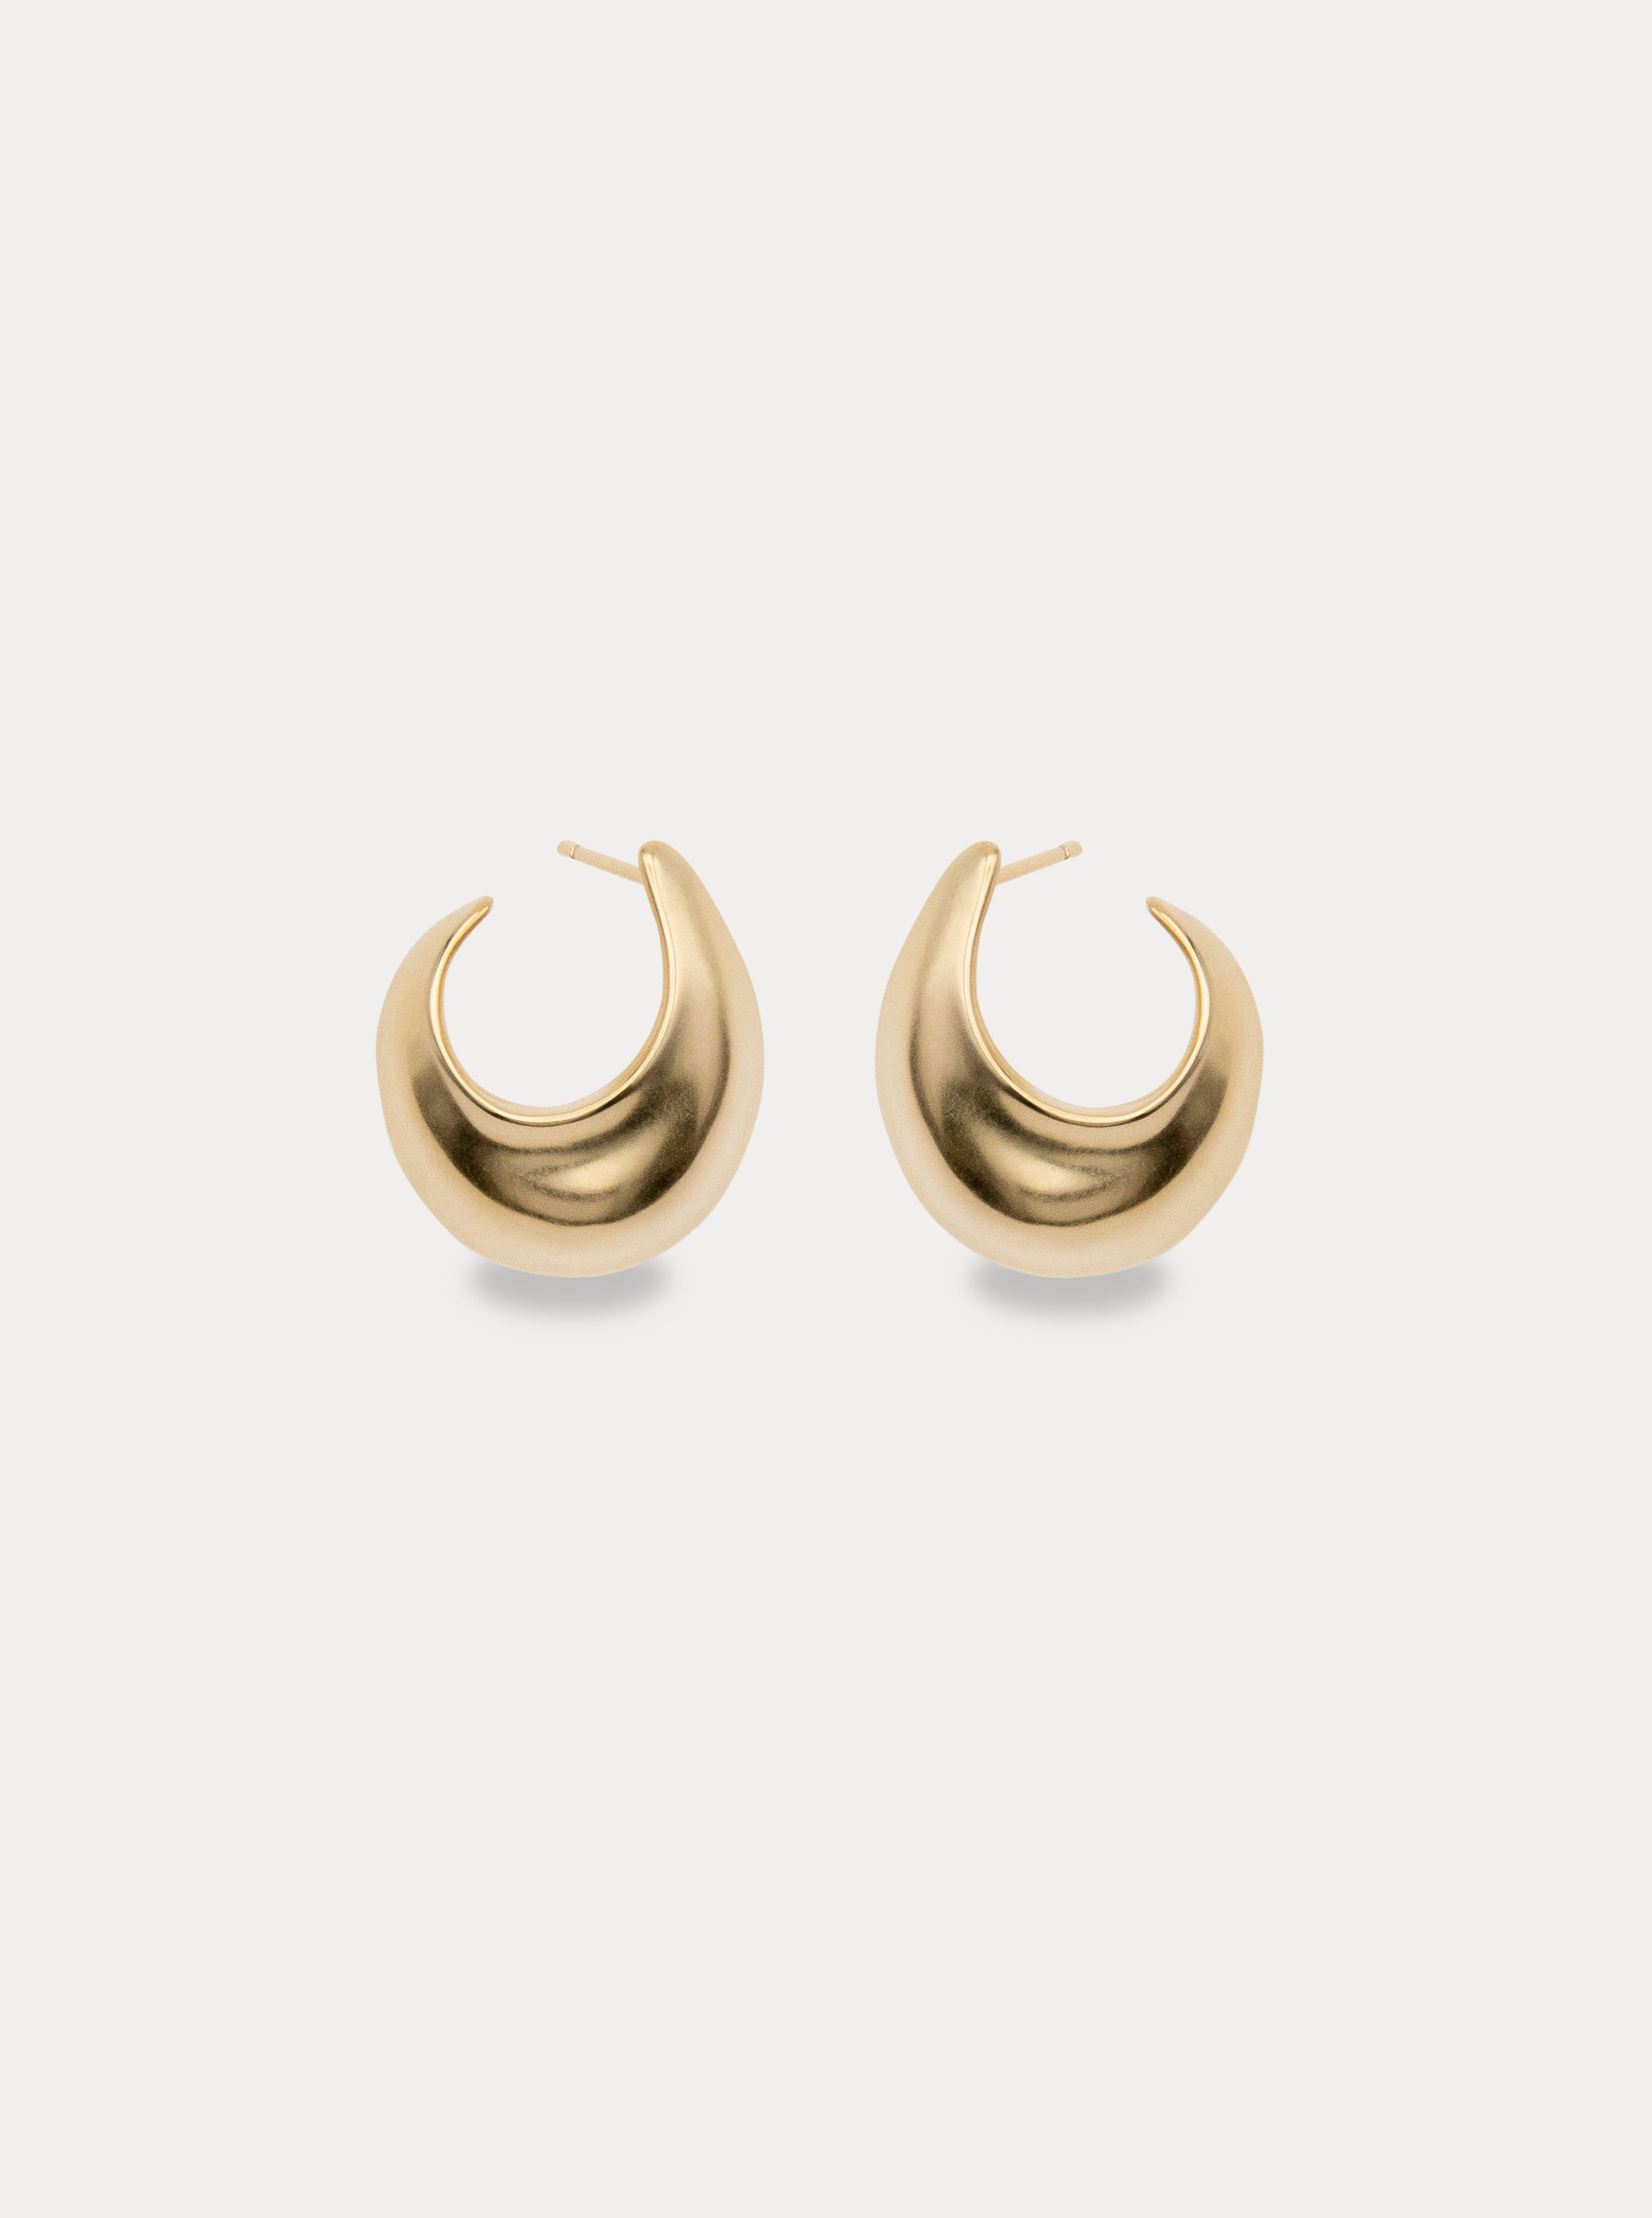 The Sabine Hoop Earrings - Classic